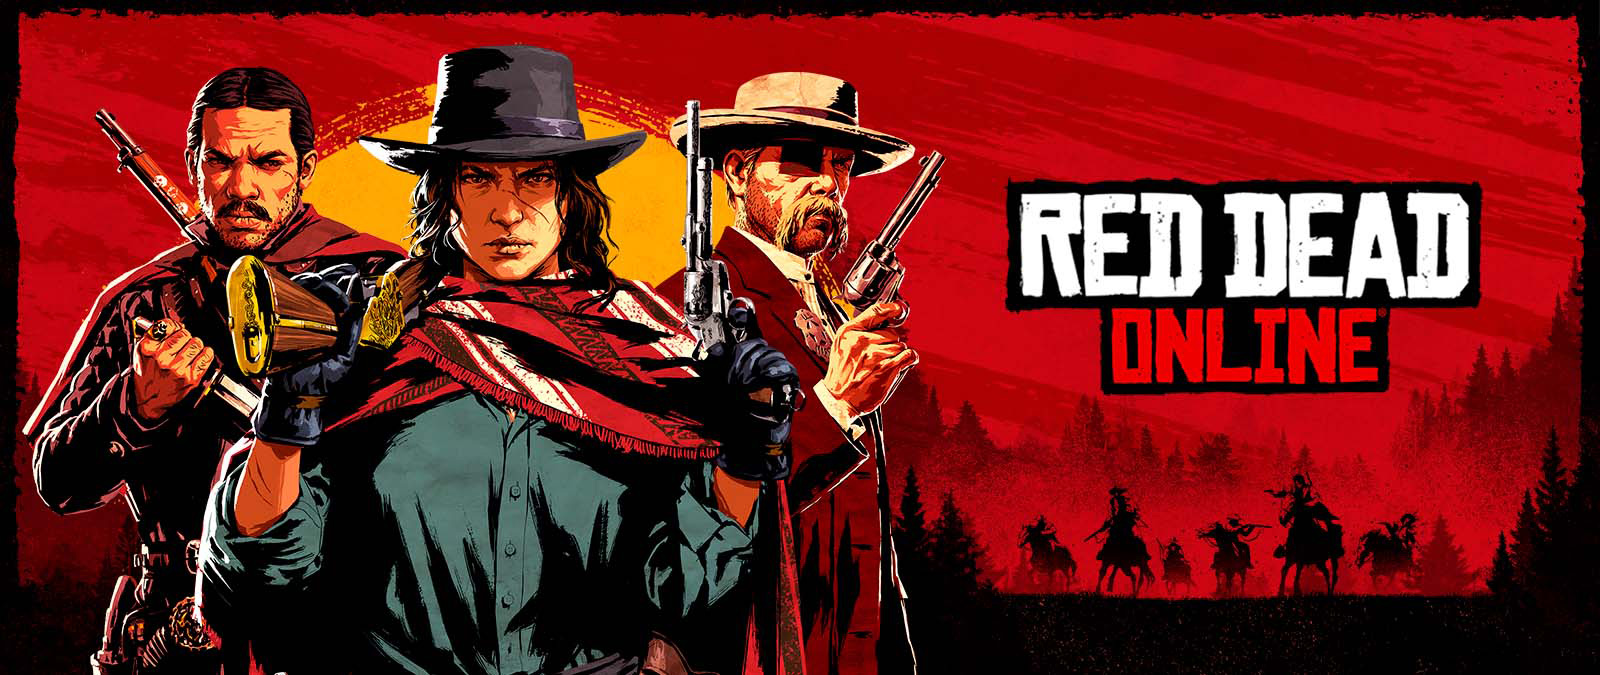 Red Dead Online. Tre karaktärer med vapen framför en solnedgång och skuggor från andra karaktärer till häst.